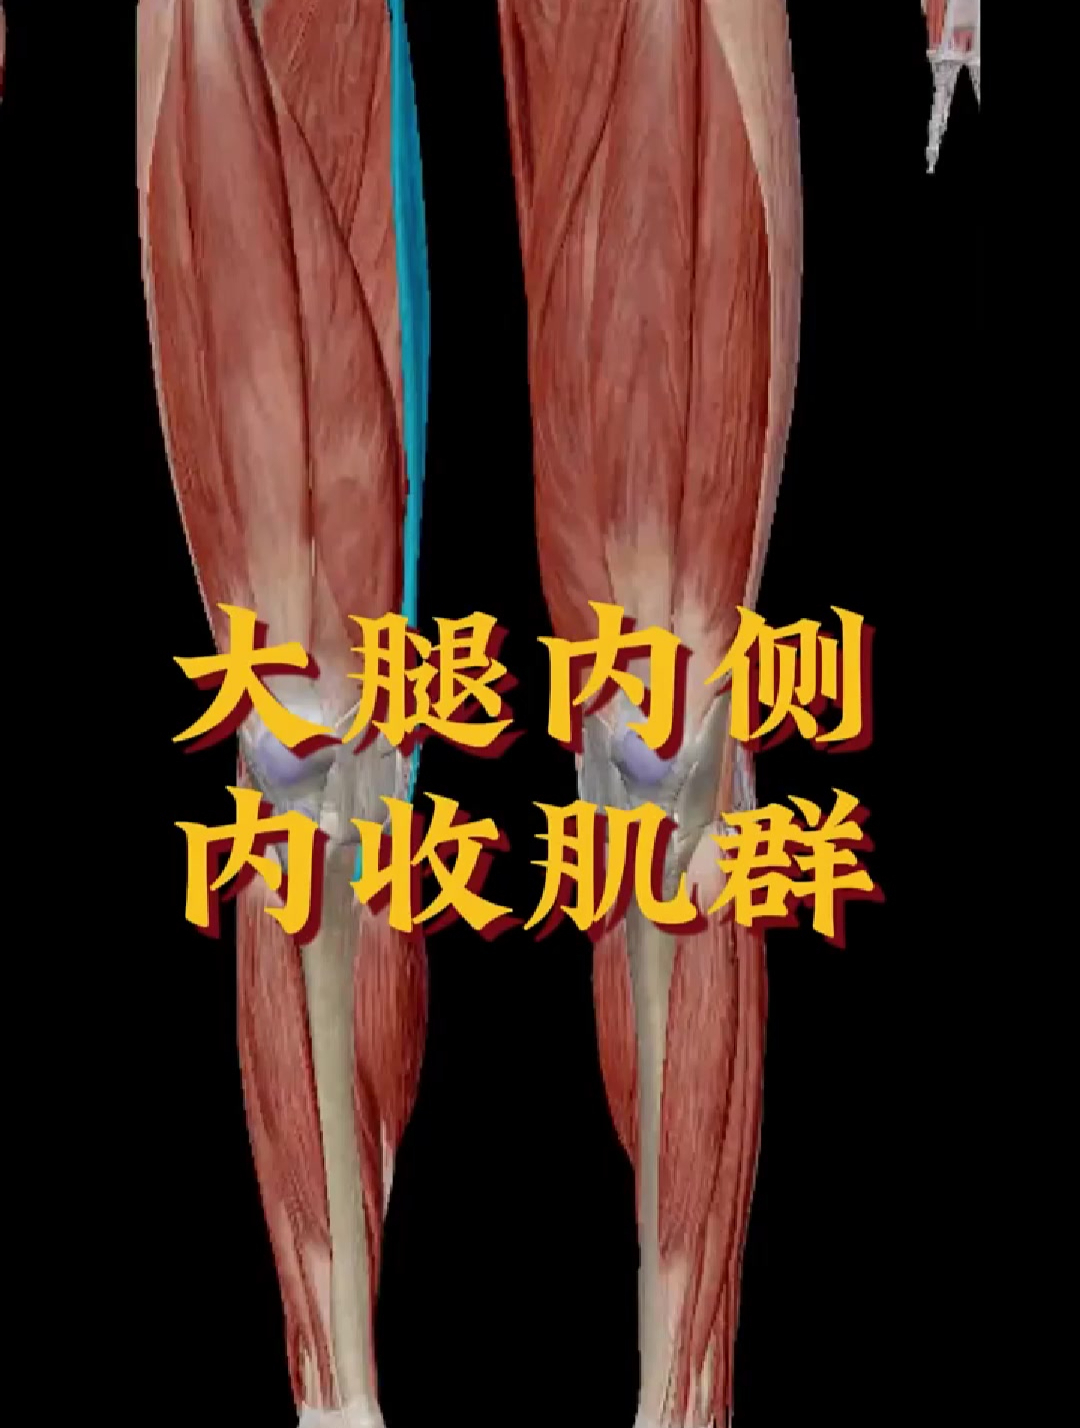 肌肉解说:大腿内侧,内收肌群